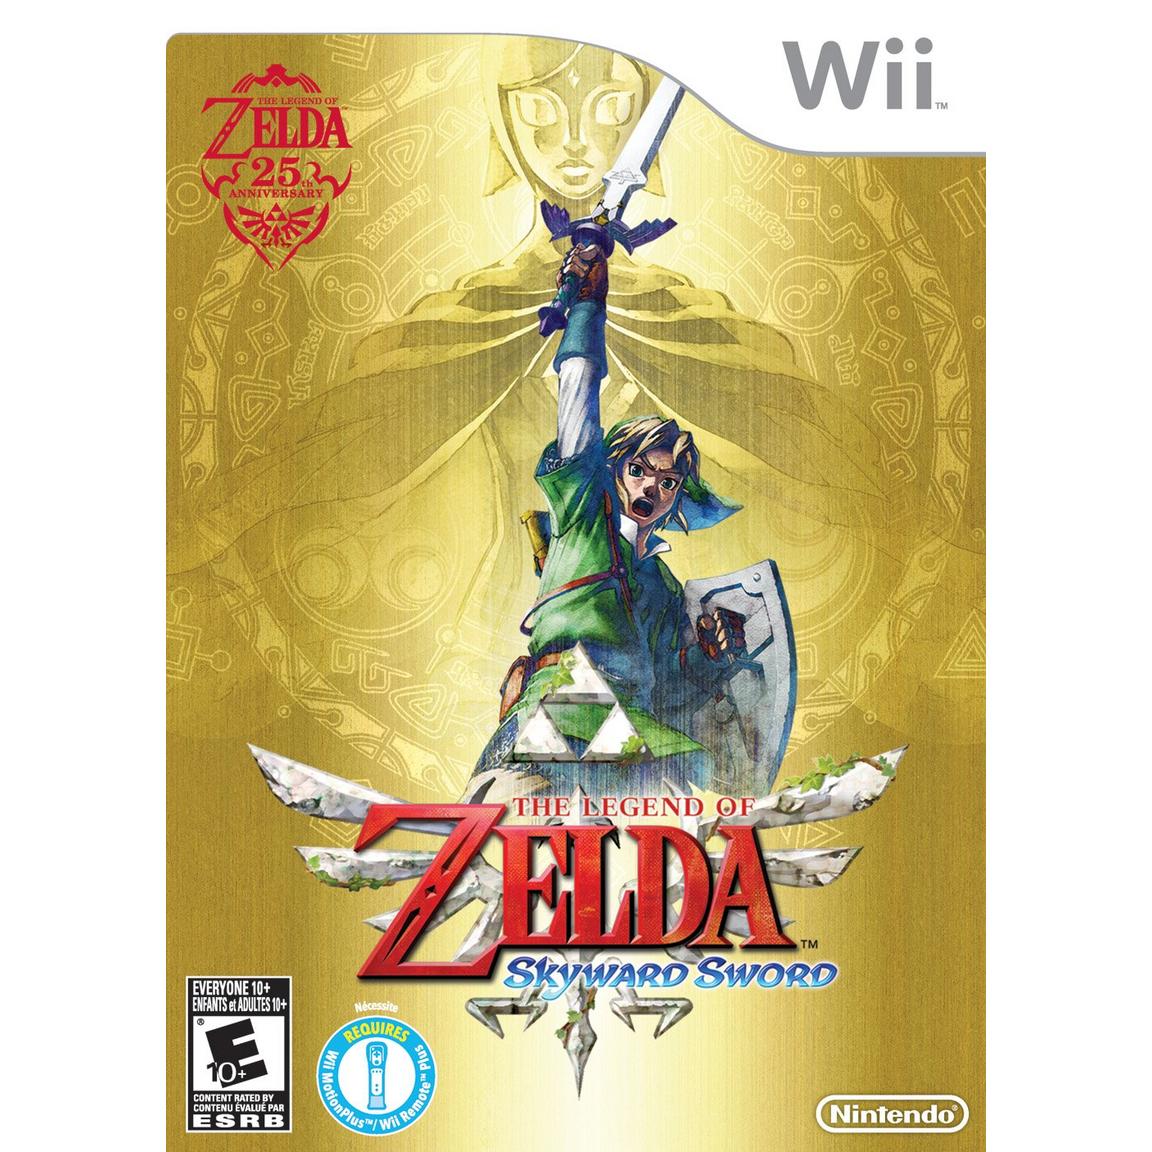 The Legend of Zelda: Skyward Sword - Nintendo Wii, Pre-Owned